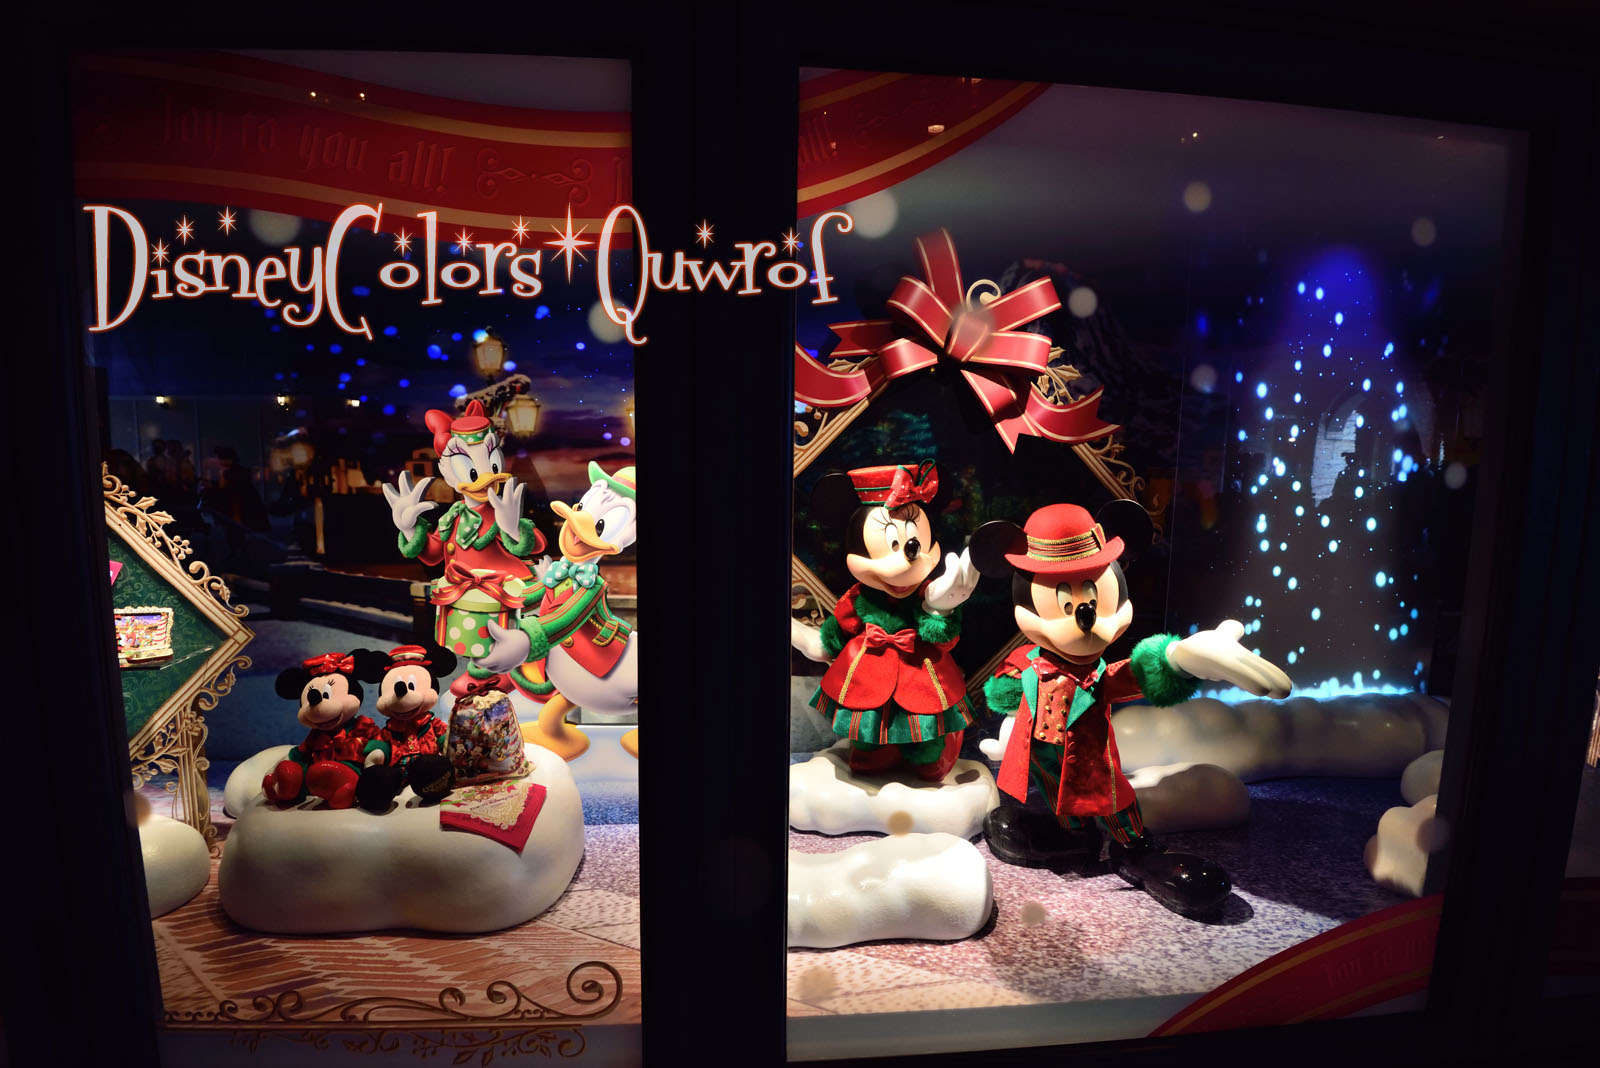 ディズニーシー クリスマス ウィッシュ15 デコレーション特集 Disney Colors Blog